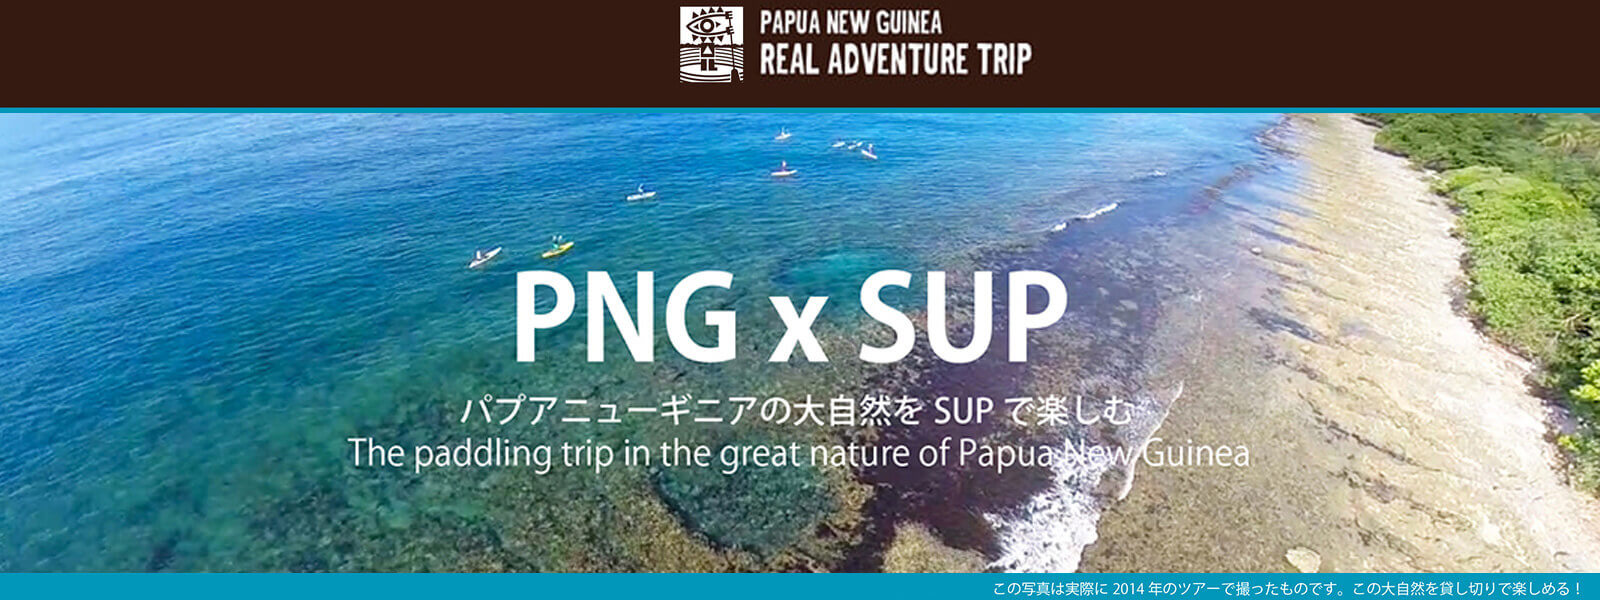 パプアニューギニアの大自然をＳＵＰで楽しむツアー